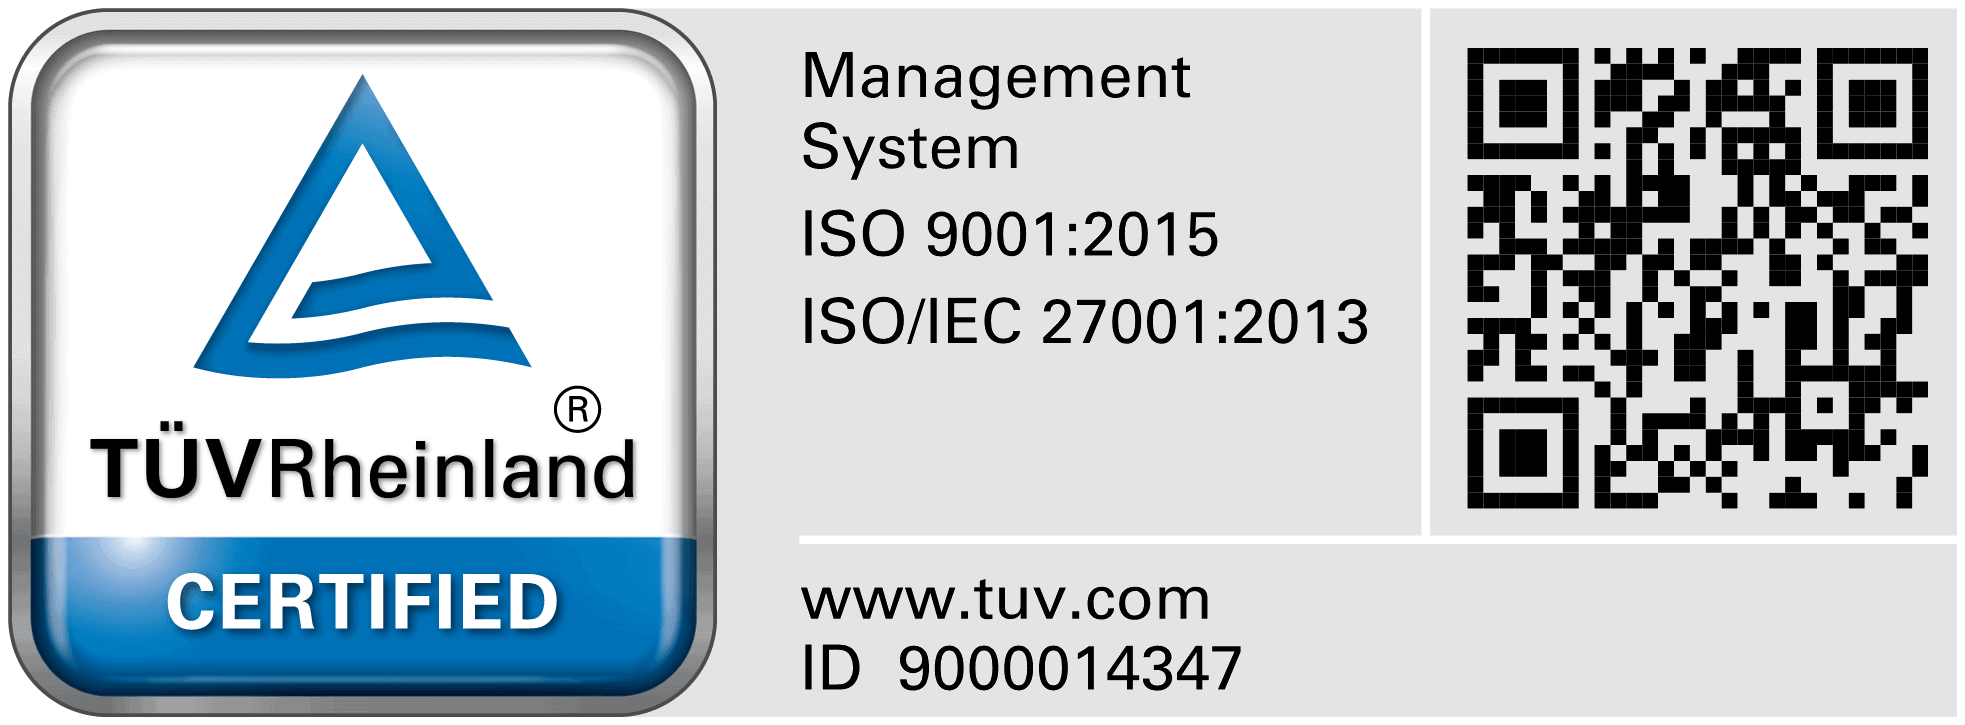 Exasol ISO 9001:2015 Cert with QR Code - EN